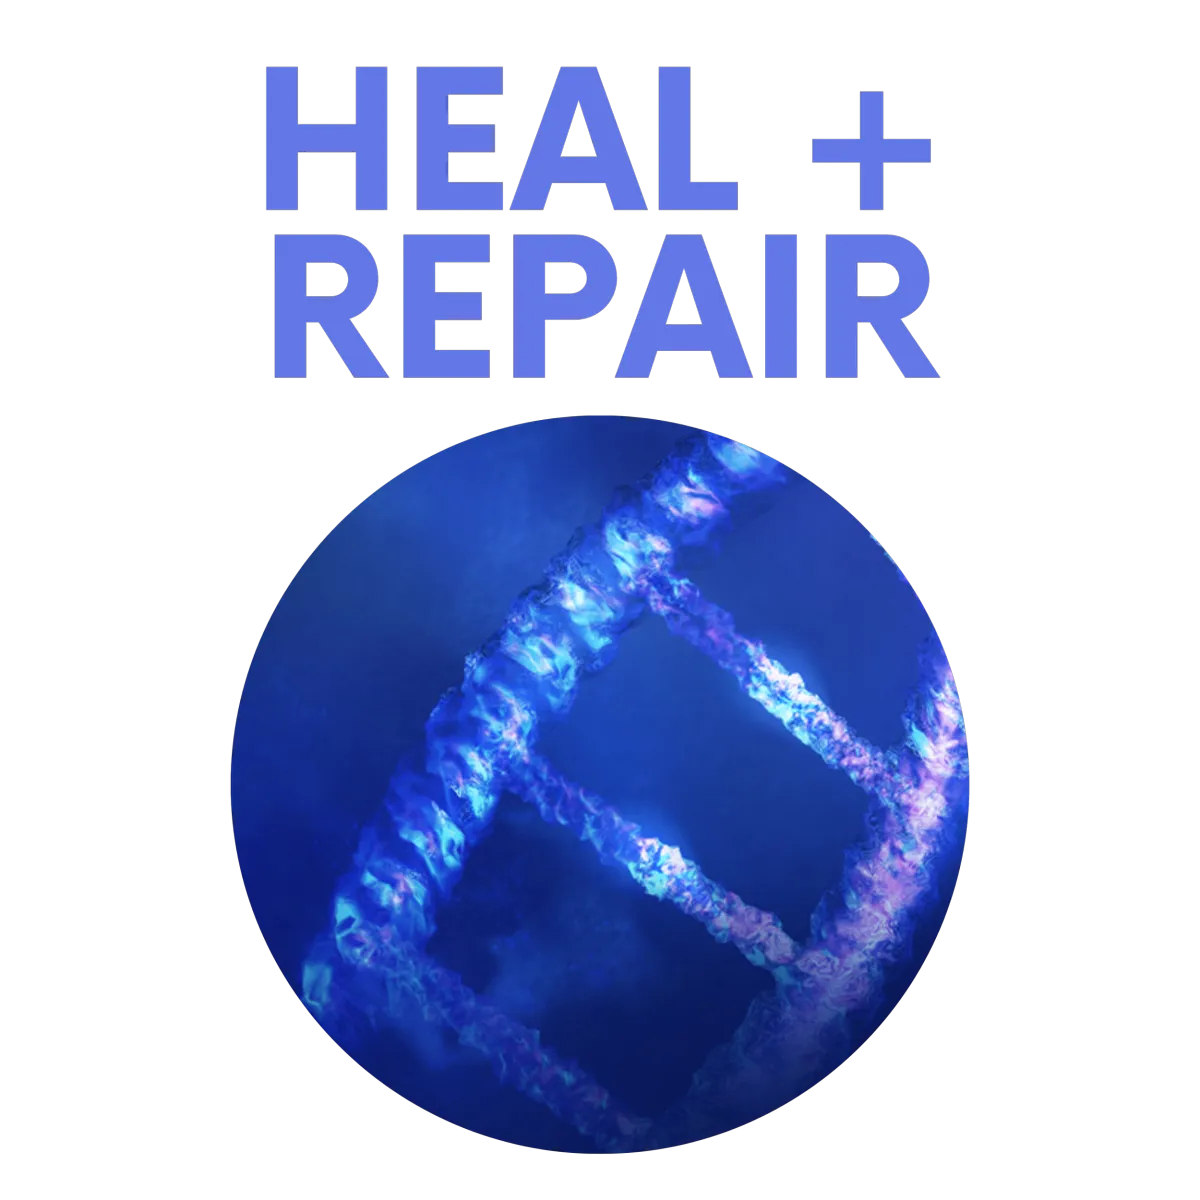 heal-and-repair